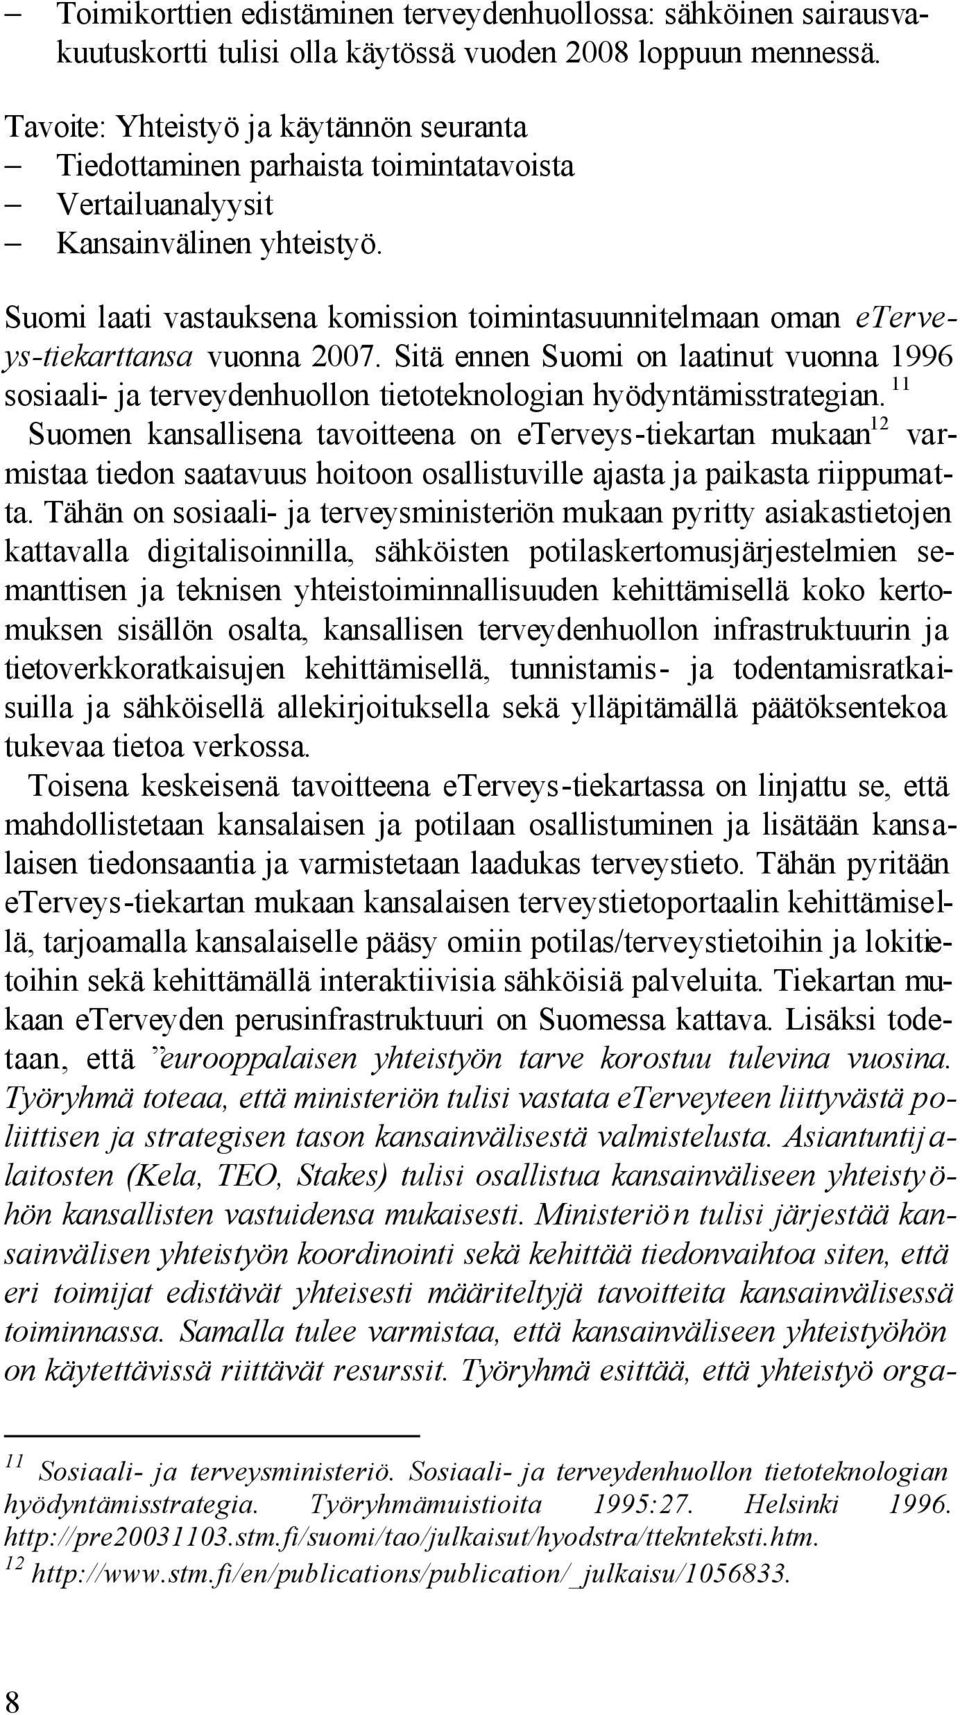 Suomi laati vastauksena komission toimintasuunnitelmaan oman eterveys-tiekarttansa vuonna 2007.